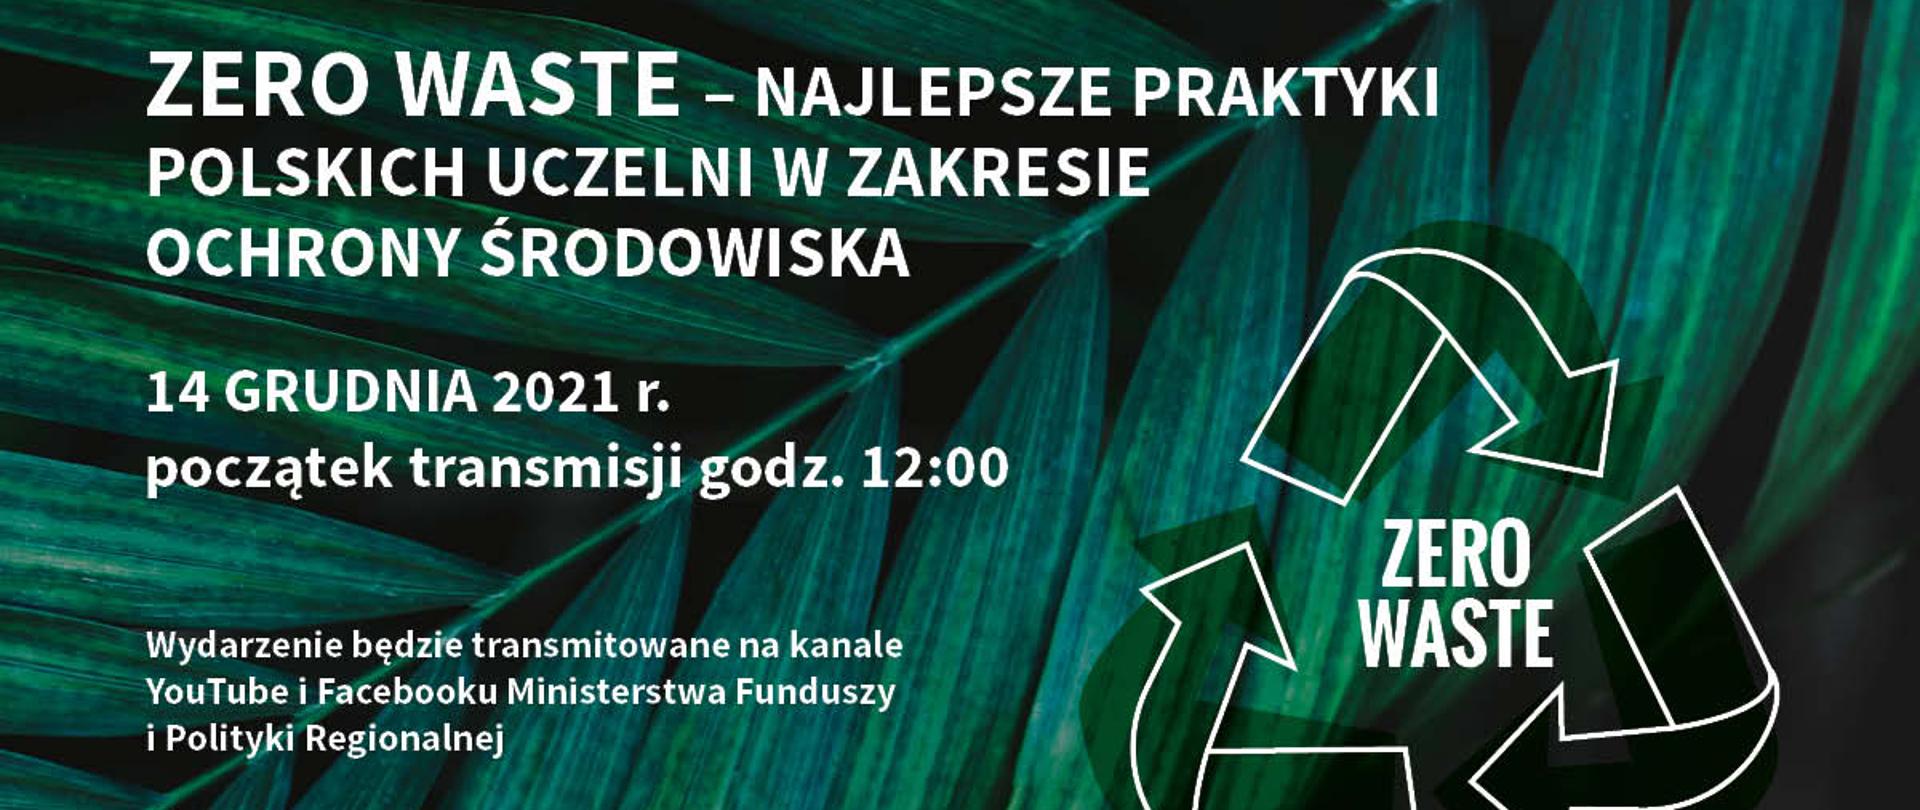 napis na grafice: Zero waste – najlepsze praktyki polskich uczelni w zakresie ochrony środowiska, 14 grudnia 2021 r., początek transmisji godz. 12:00, wydarzenie będzie transmitowane na kanały YouTube i Facebooku Ministerstwa Funduszy i Polityki Regionalnej